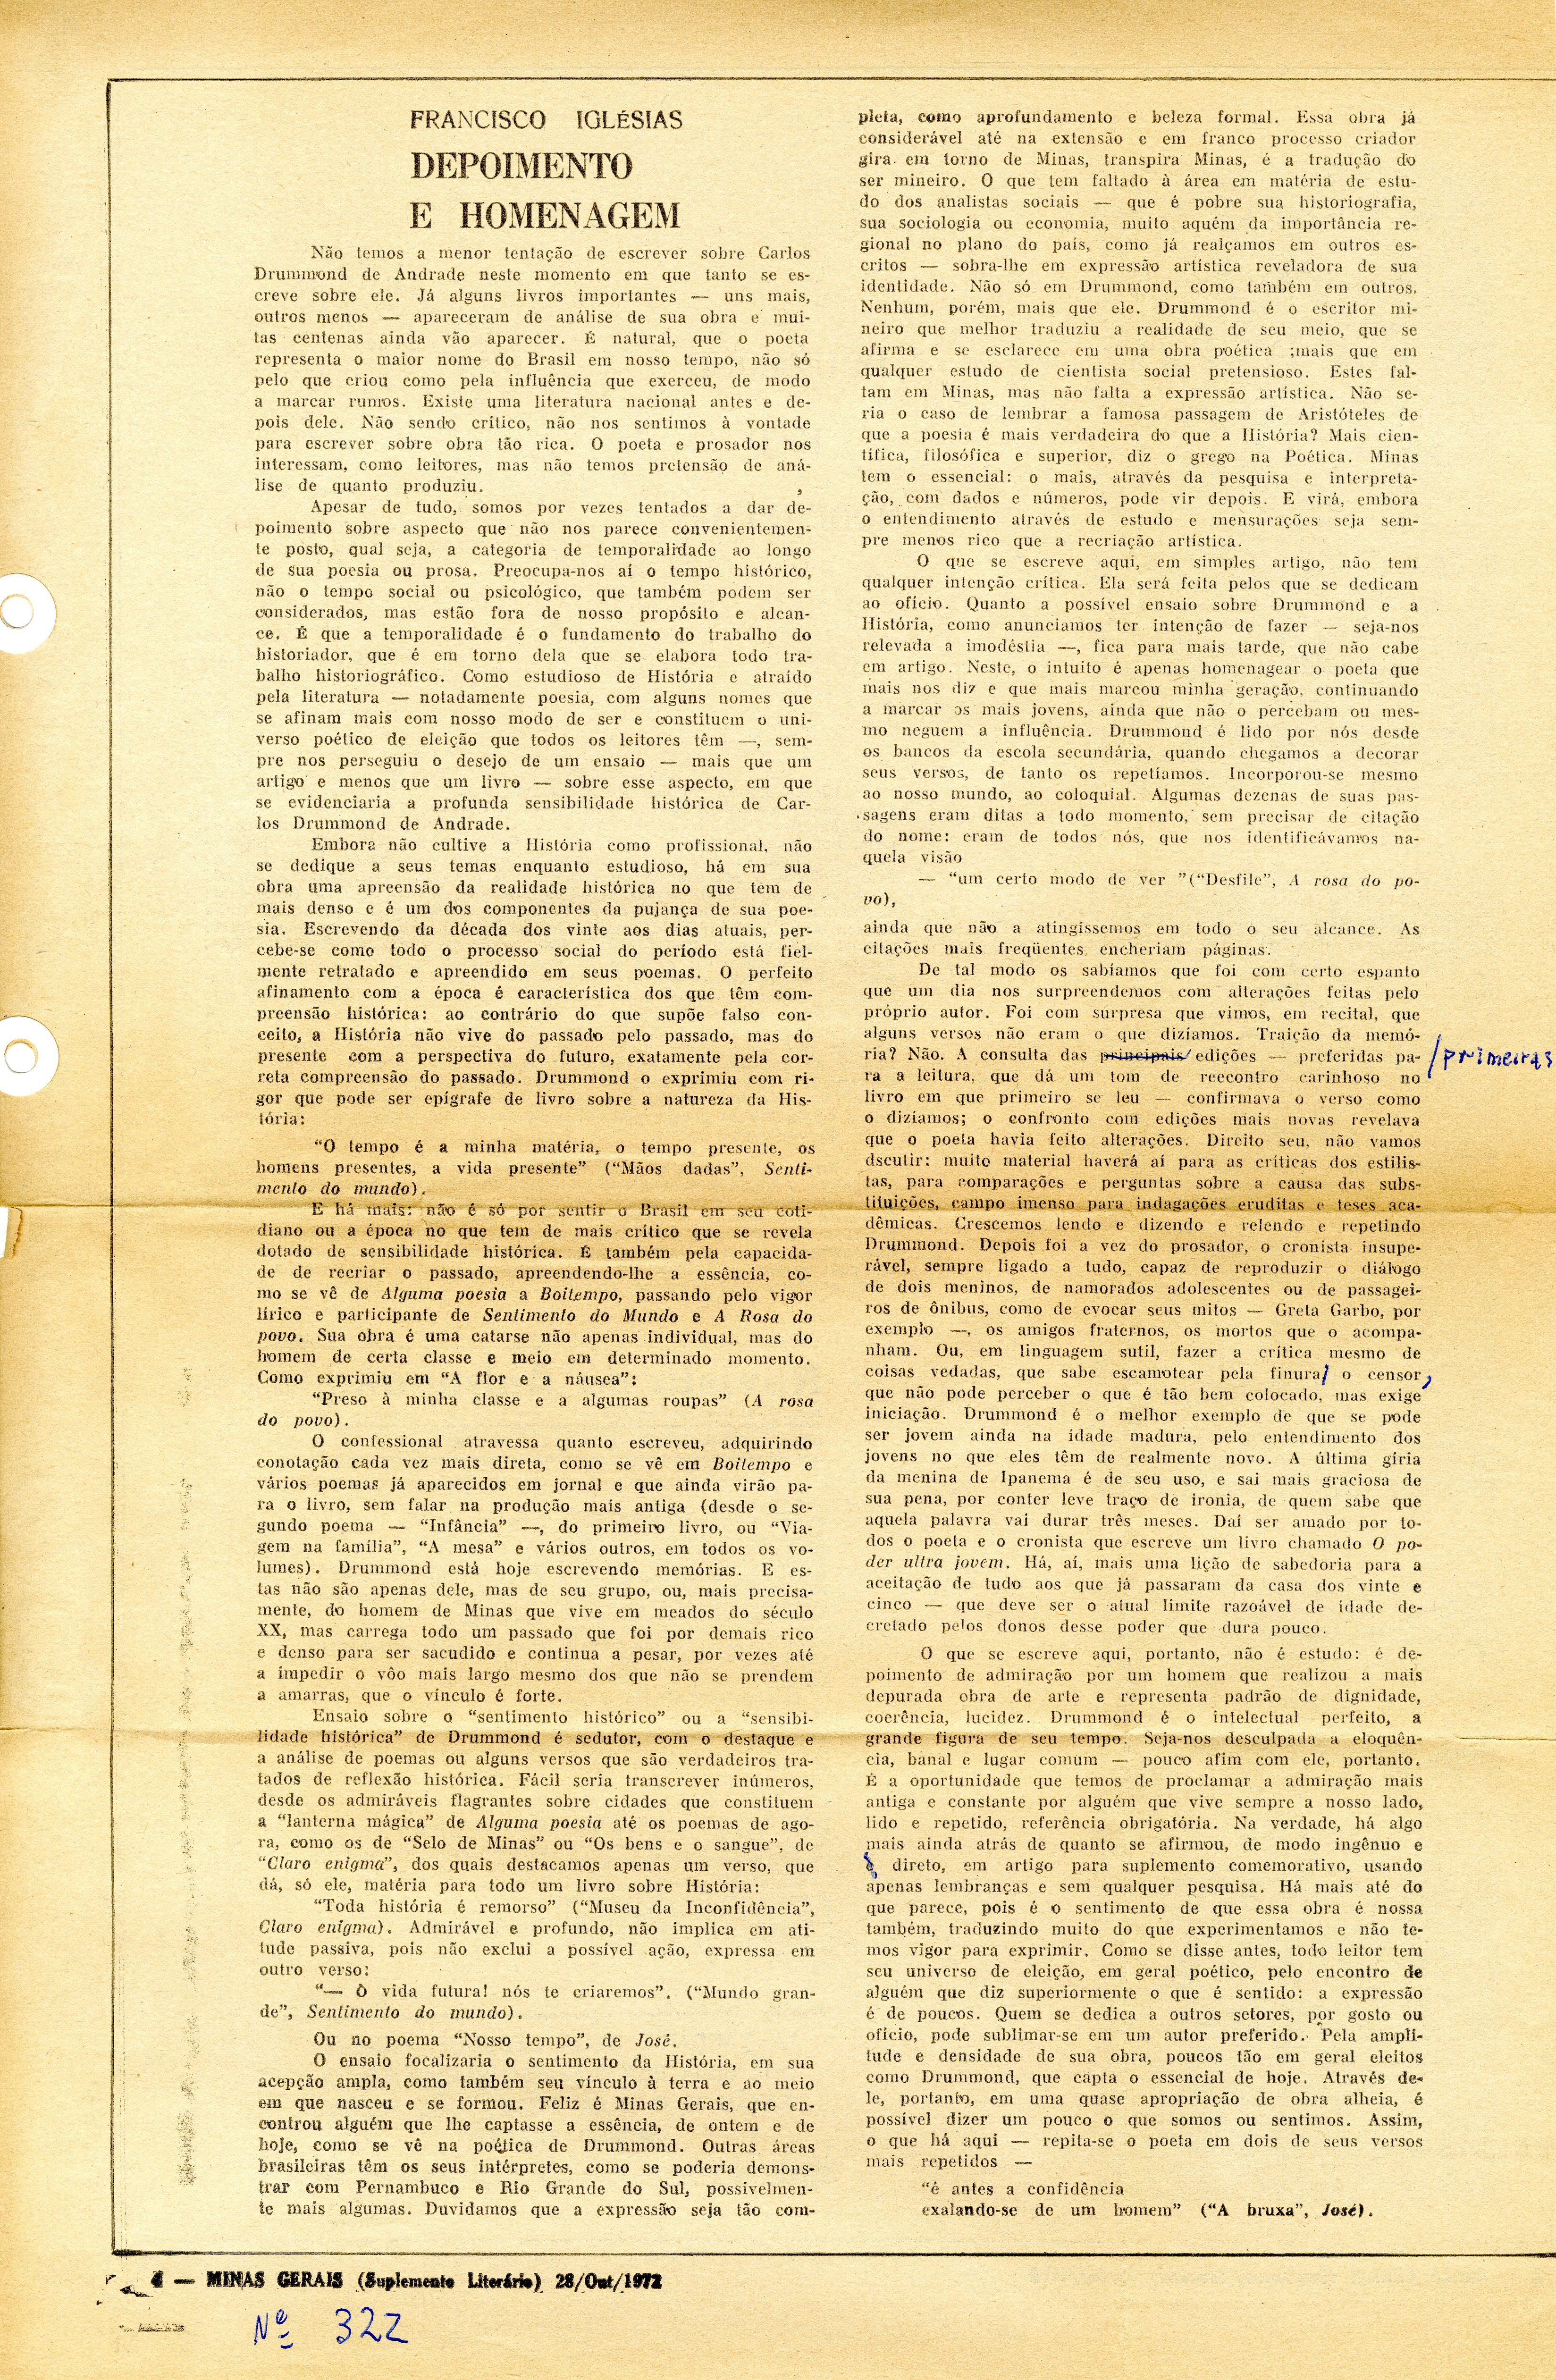 Artigo de Francisco Iglésias publicado no Minas Gerais, Belo Horizonte, 28/10/1972. Arquivo Francisco Iglésias / Acervo IMS